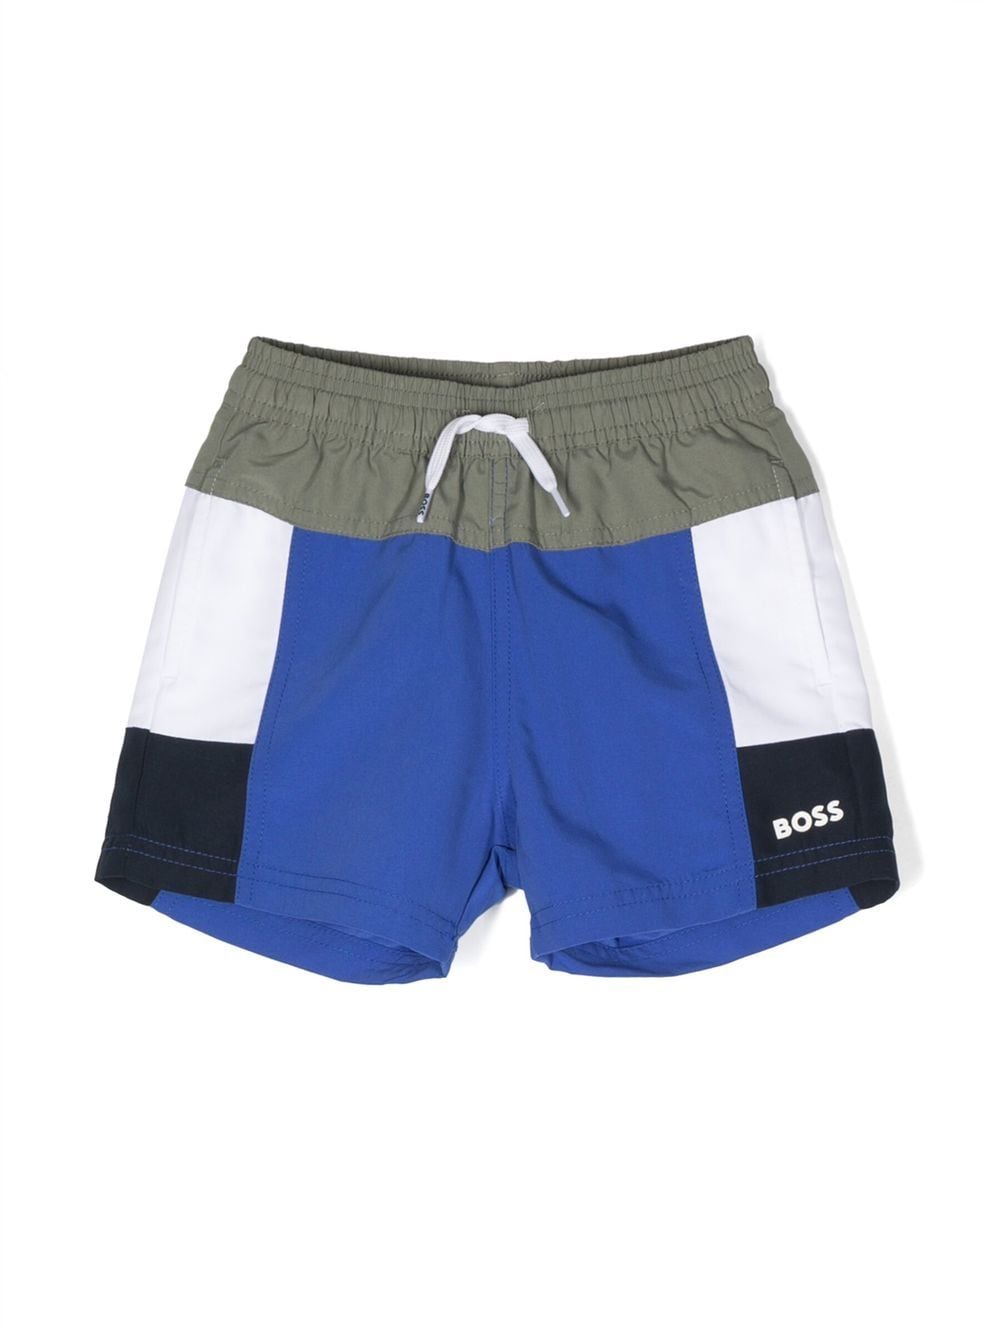 Bosswear Kids' Colourblock Swim Shorts In Blue